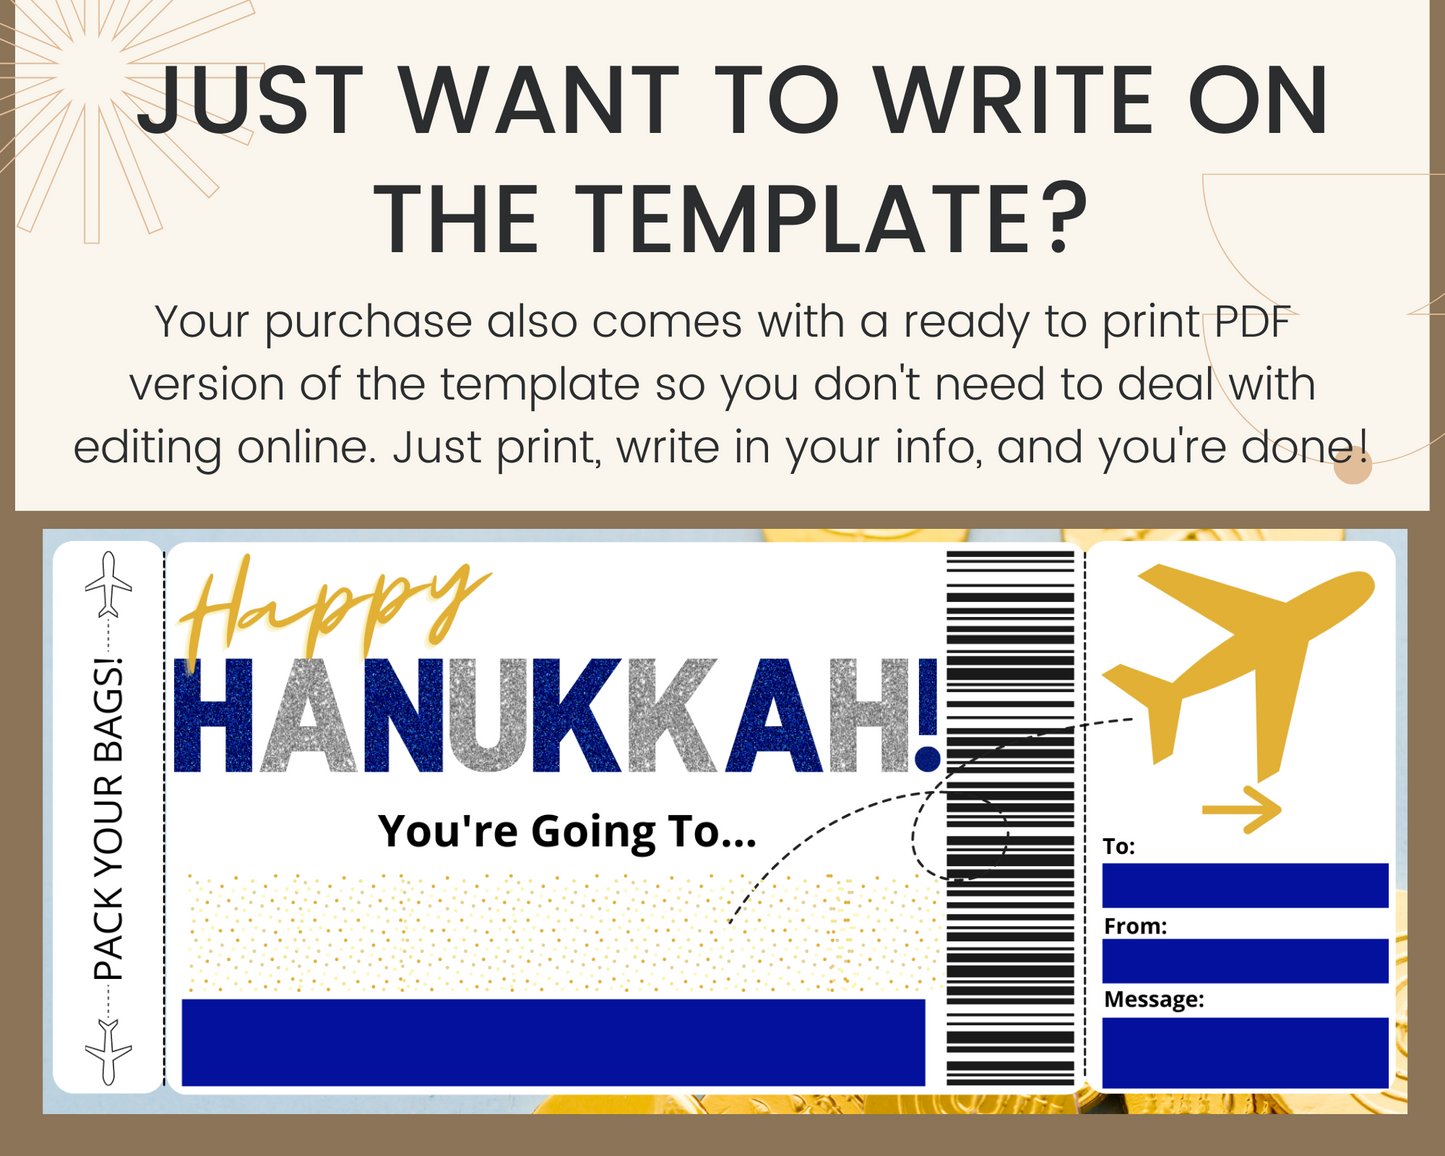 Hanukkah Boarding Pass Template